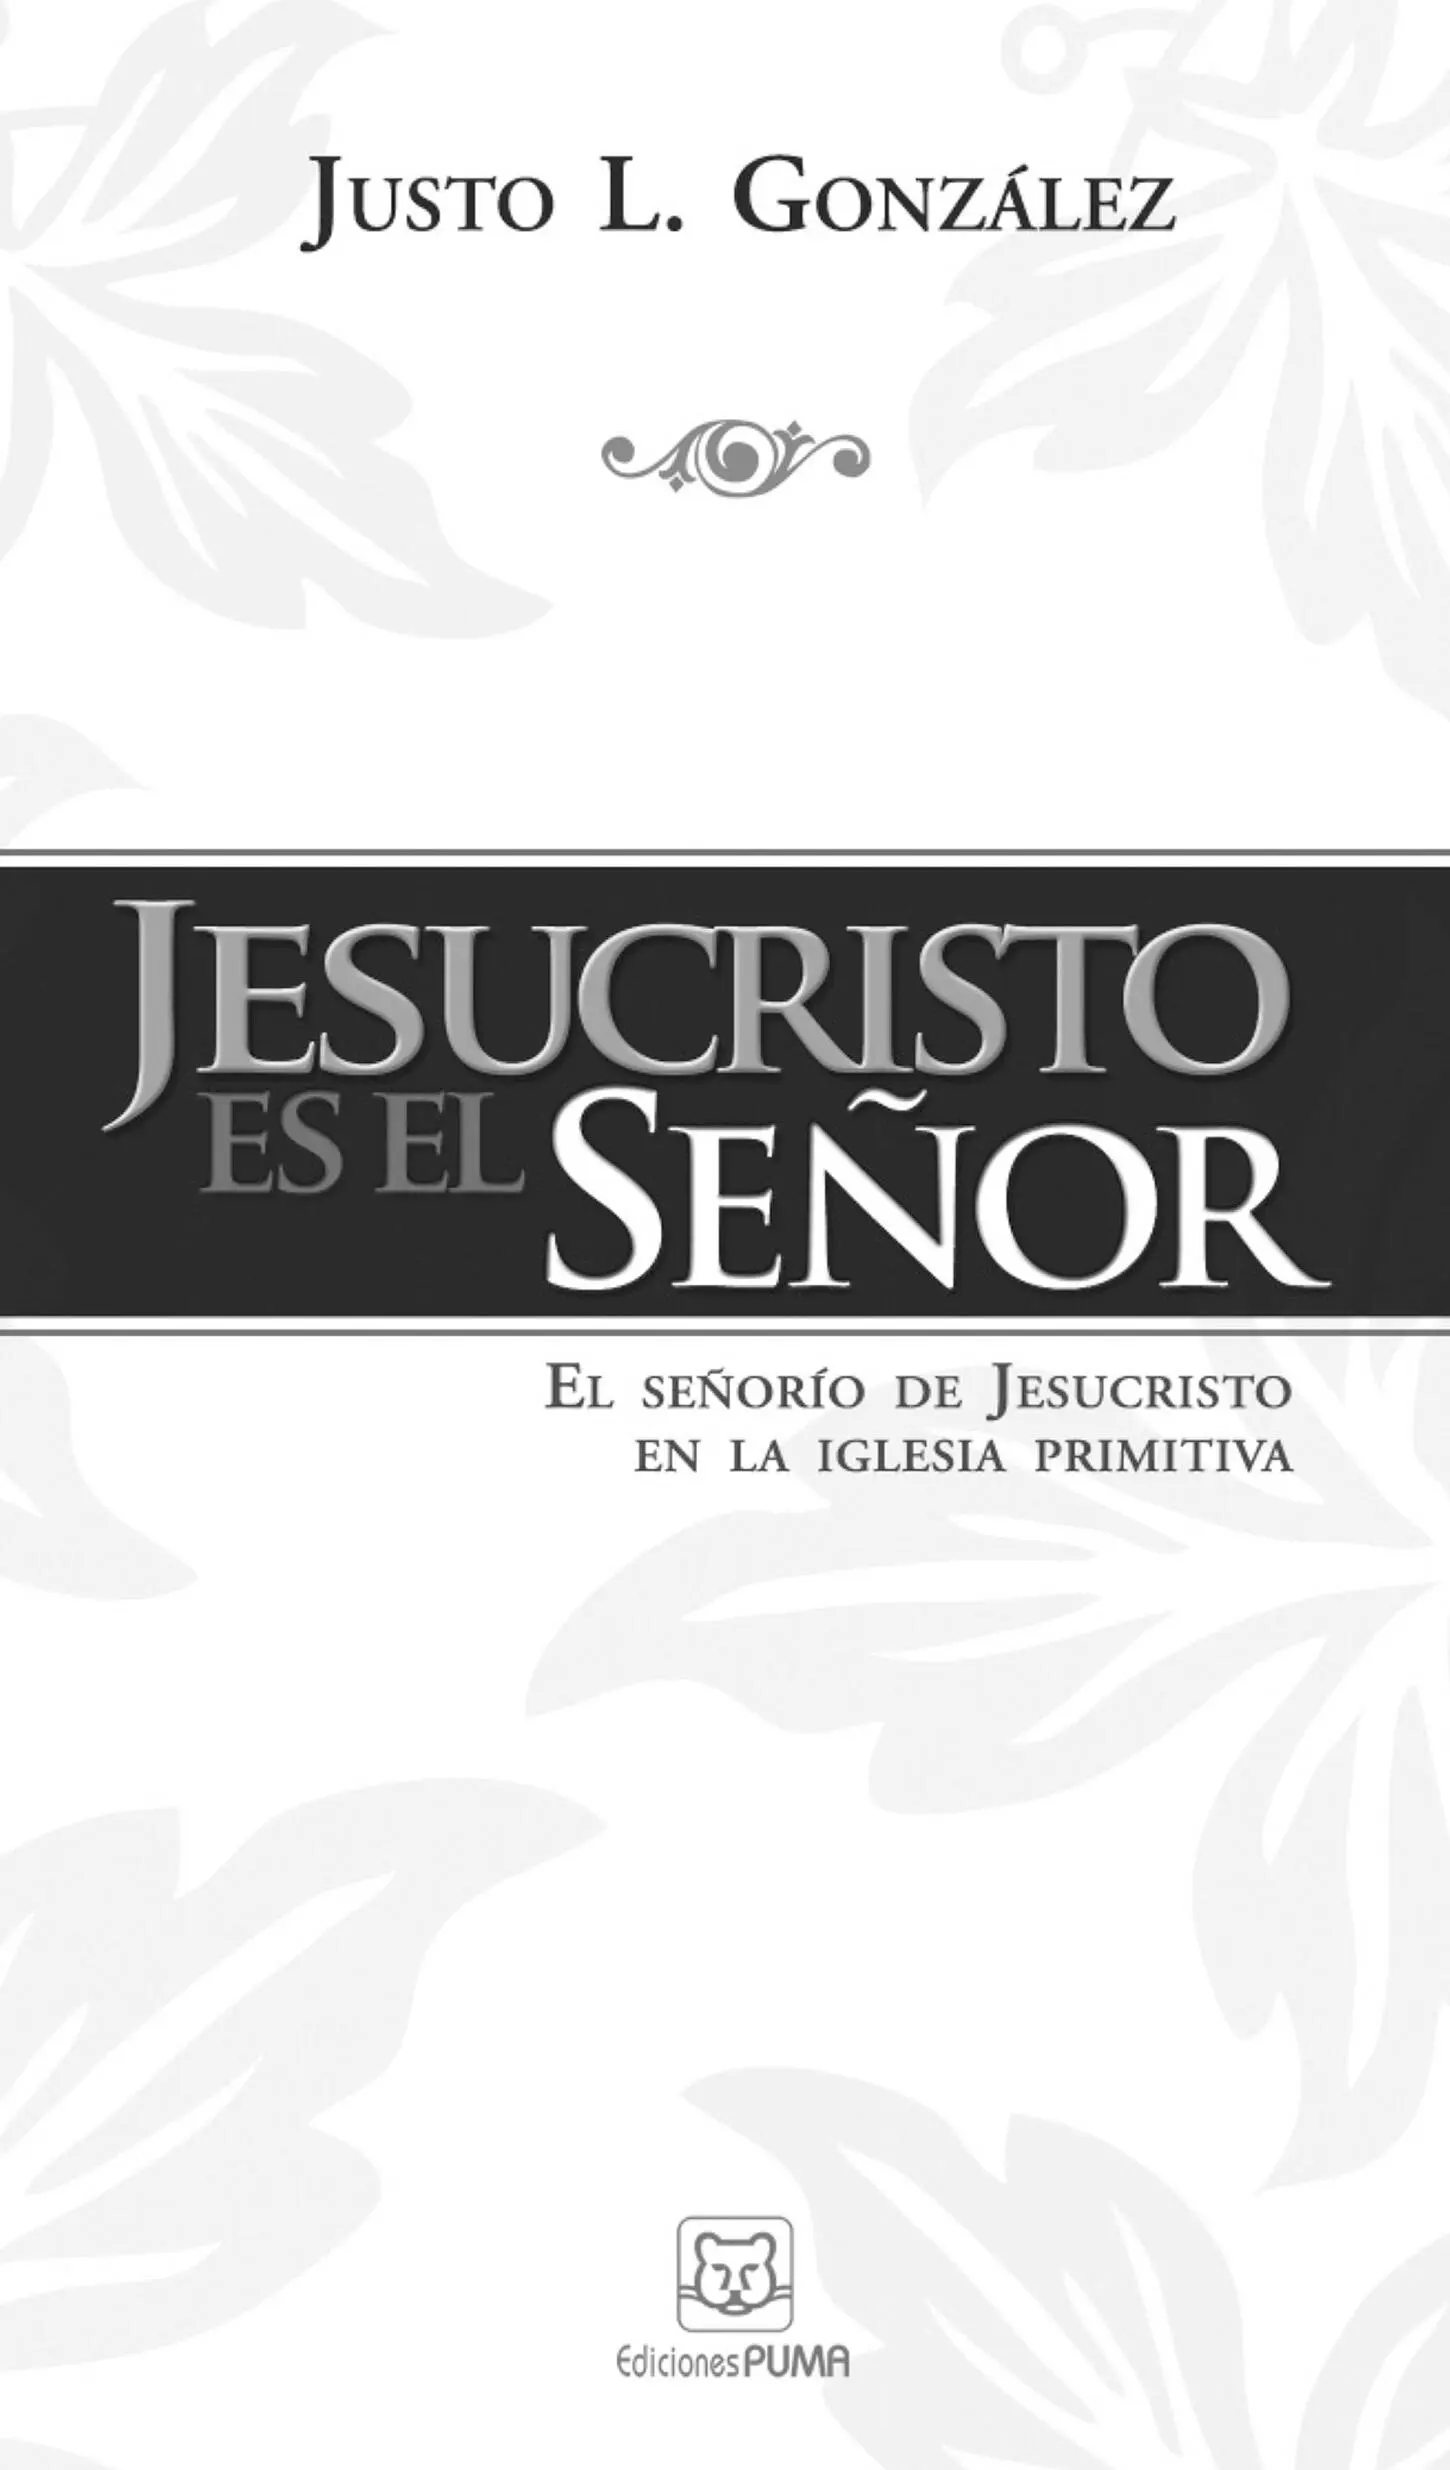 Jesucristo es el Señor El señorío de Jesucristo en la iglesia primitiva 2011 - фото 2